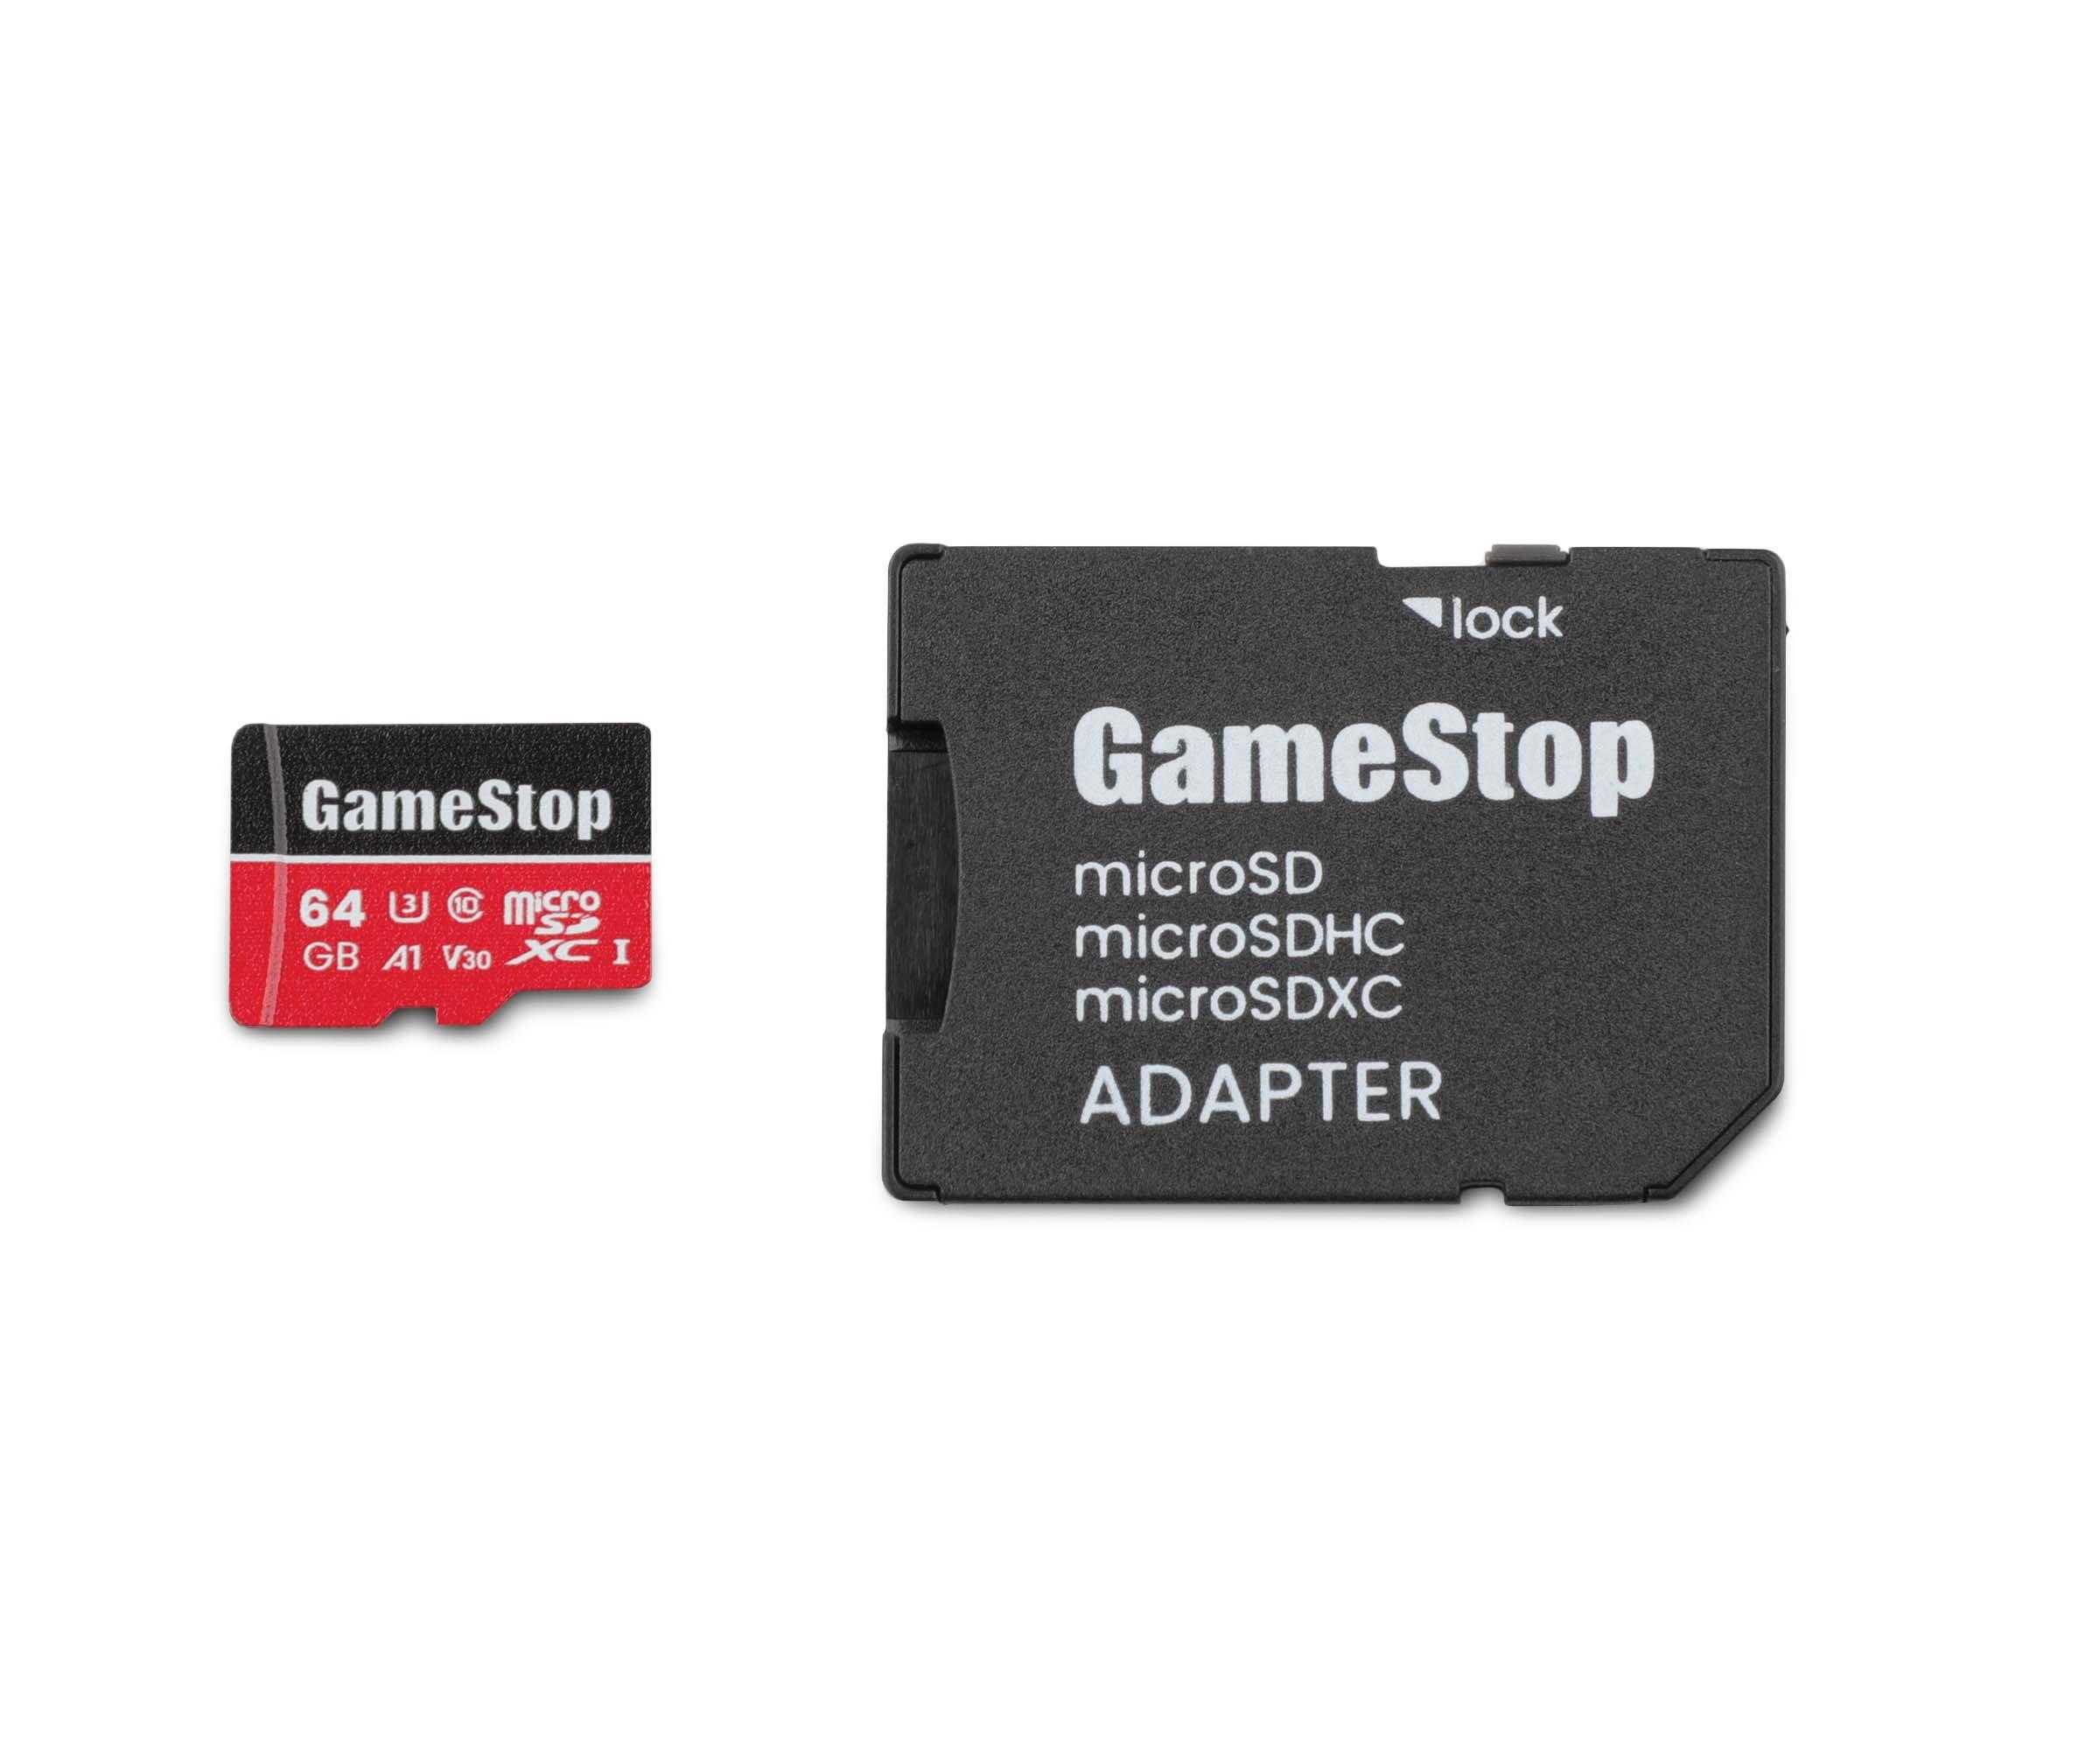 Escultor Desfiladero barba GameStop 64GB U3 Micro SD Card with Adapter | GameStop